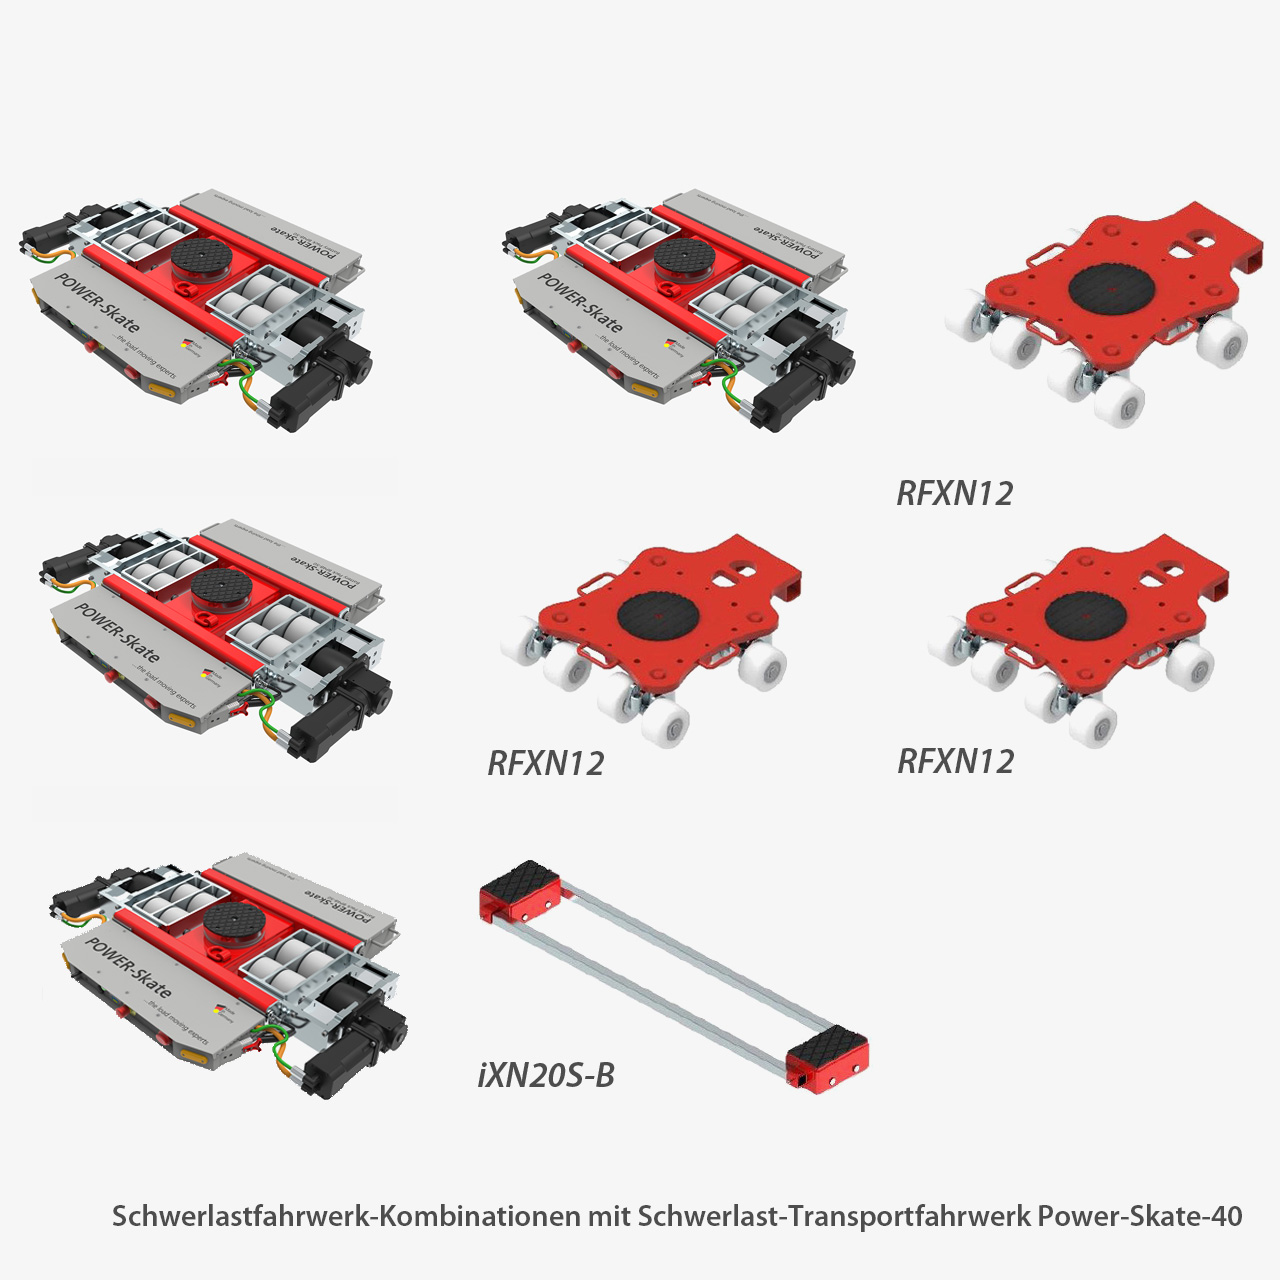 RC Schwerlast-Transportfahrwerk POWER-Skate mit LiFePO4-Akku und 2,4 GHz Funkfernsteuerung